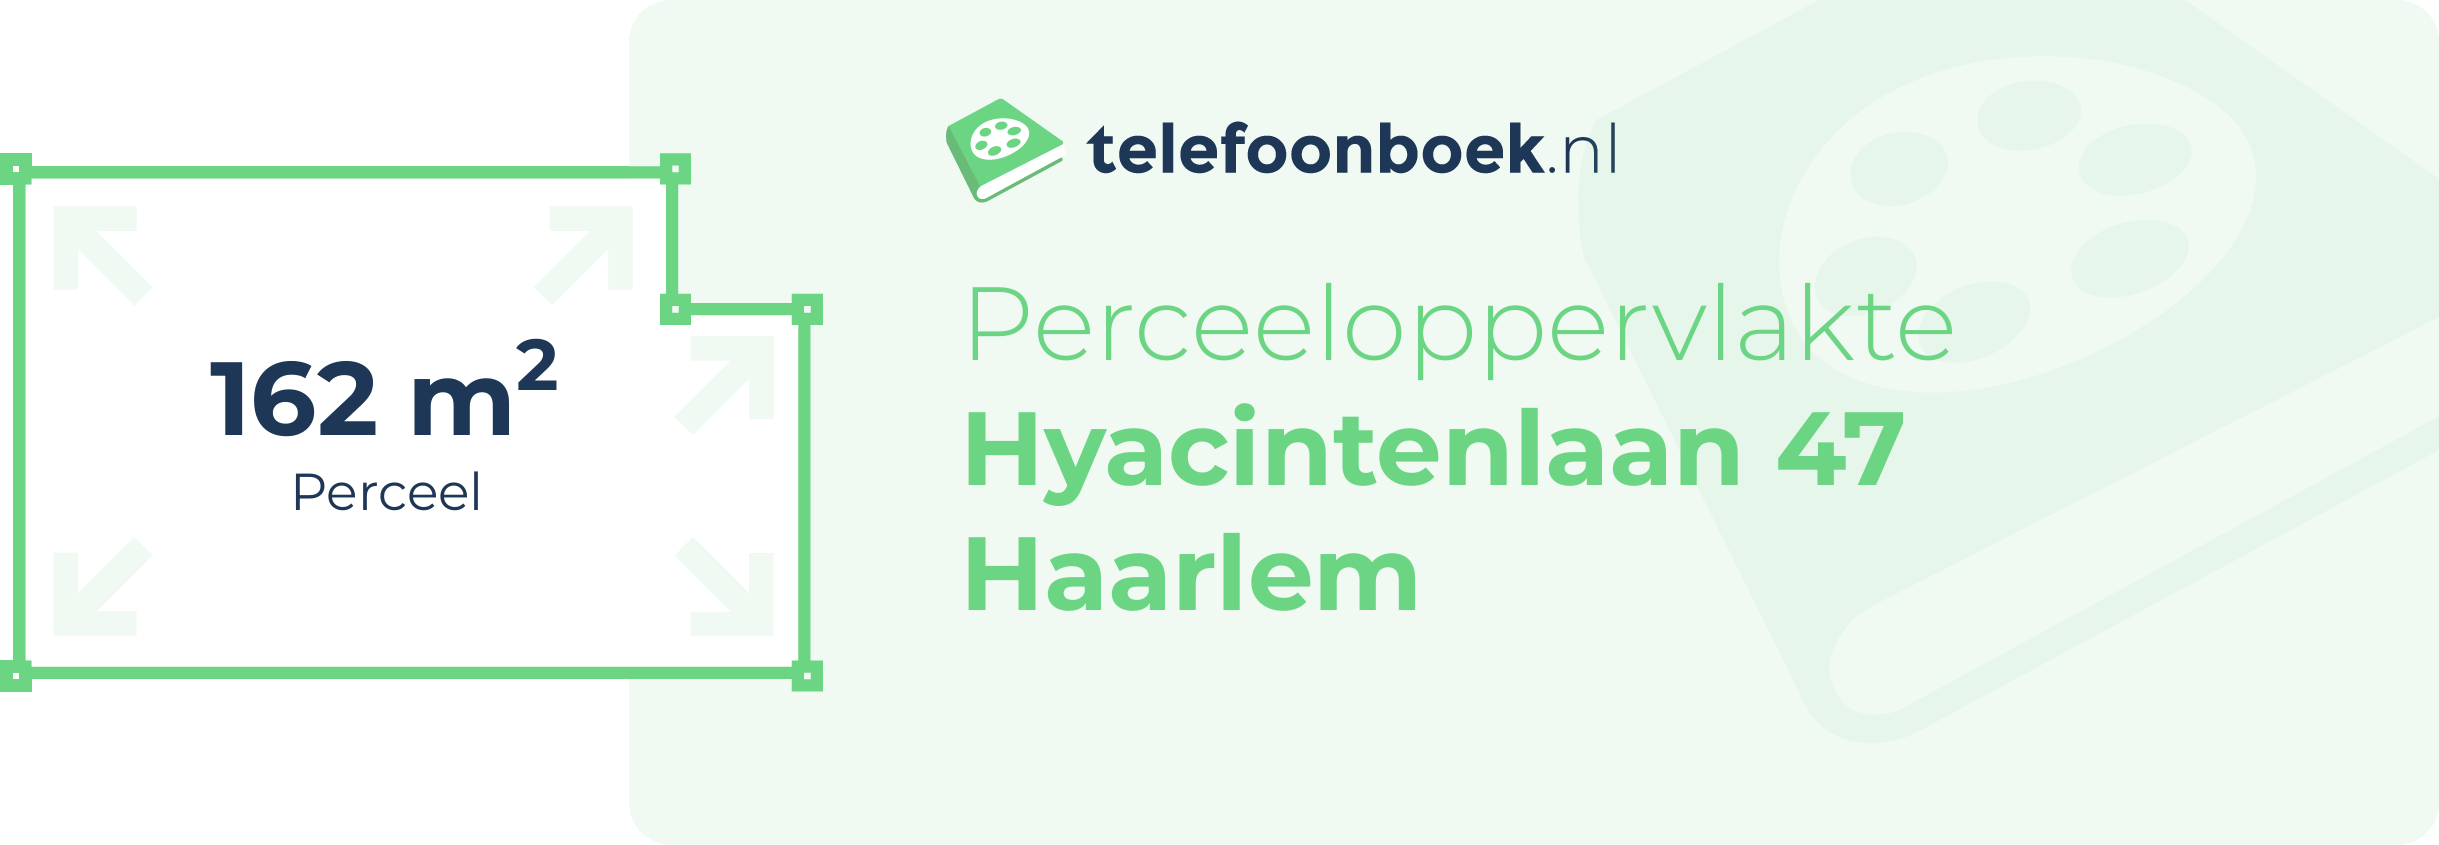 Perceeloppervlakte Hyacintenlaan 47 Haarlem